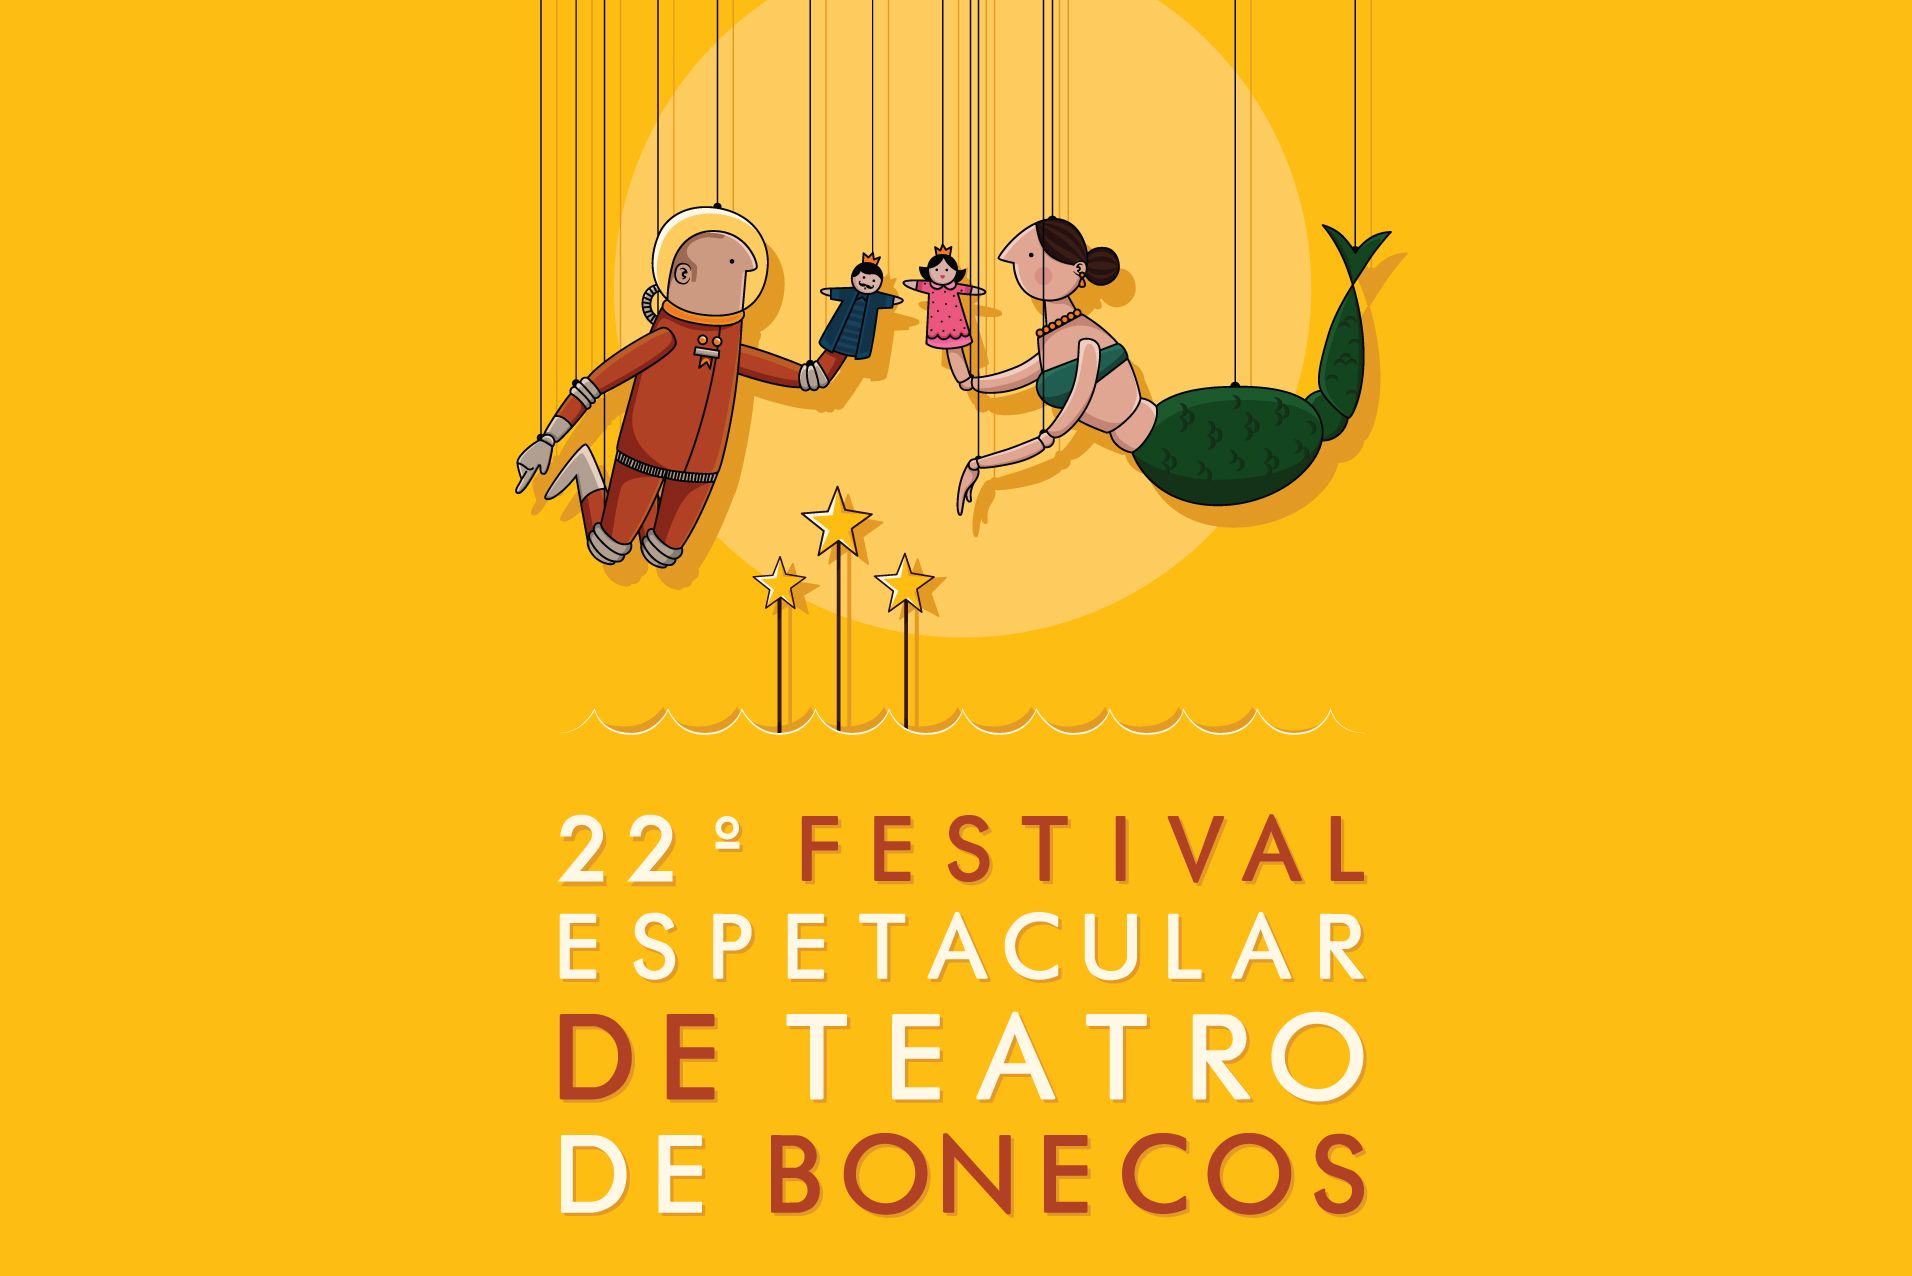  Inscrições para Festival Espetacular de Teatro de Bonecos estão abertas